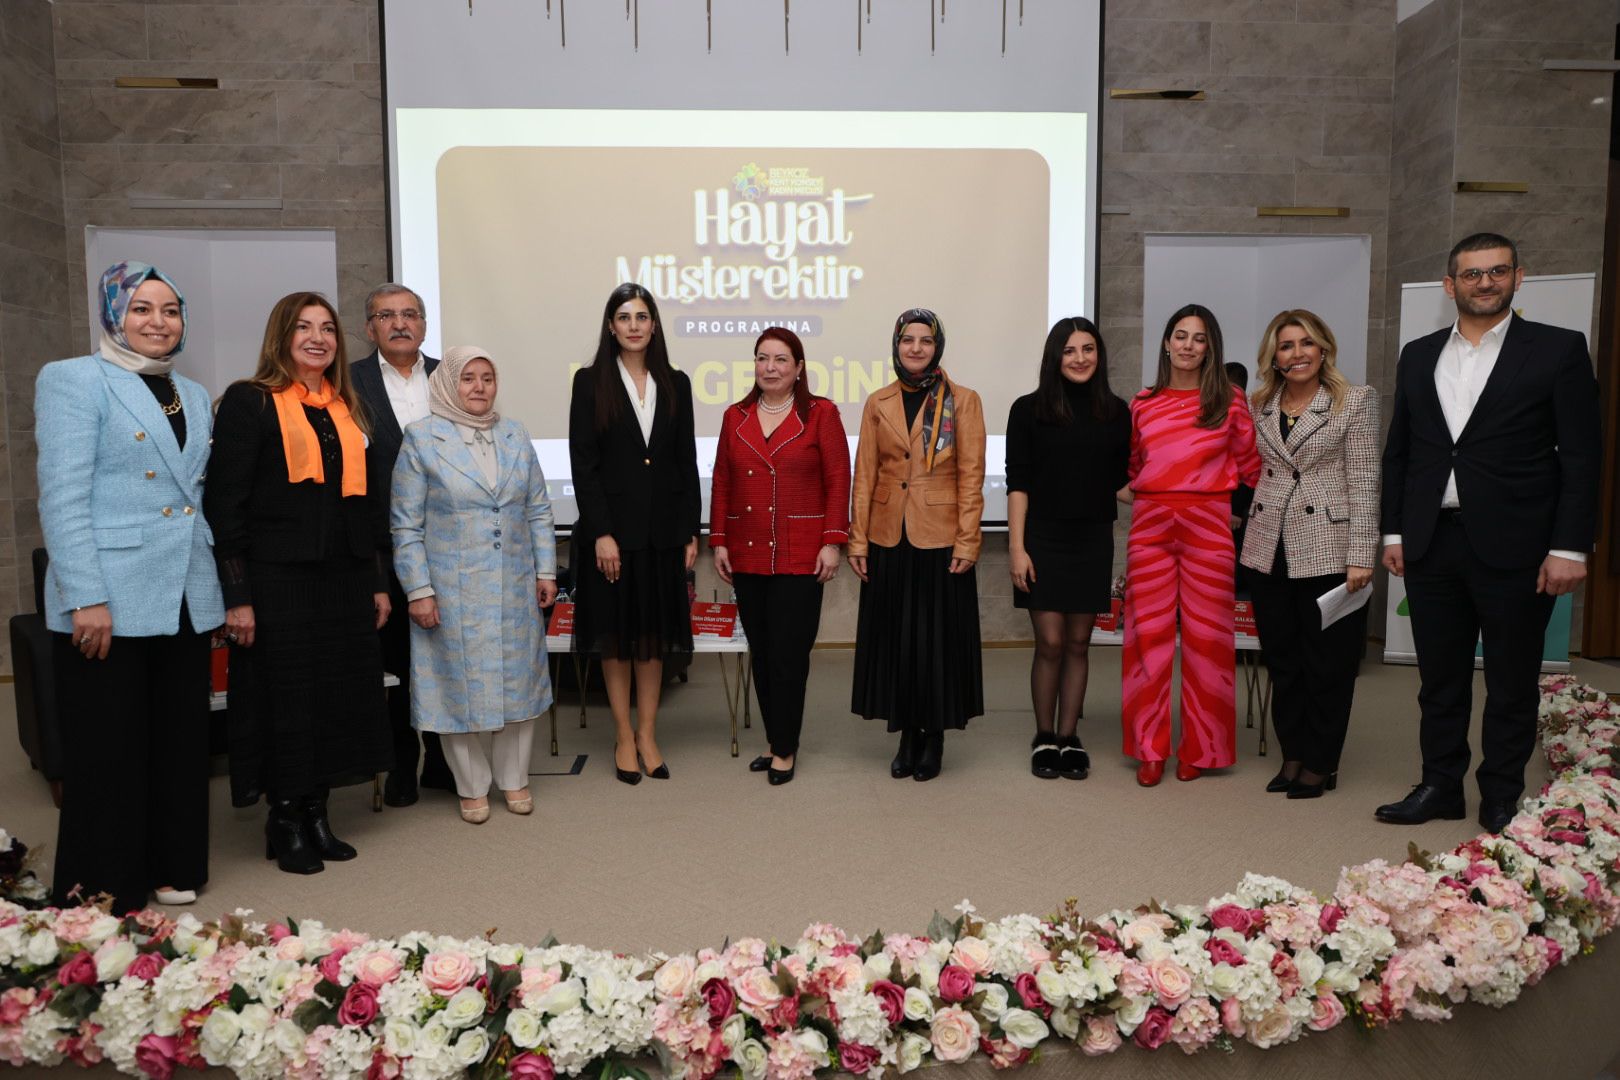 Türkiye’de İlki Başardılar Beykozlu Kadınlara İlham Oldular